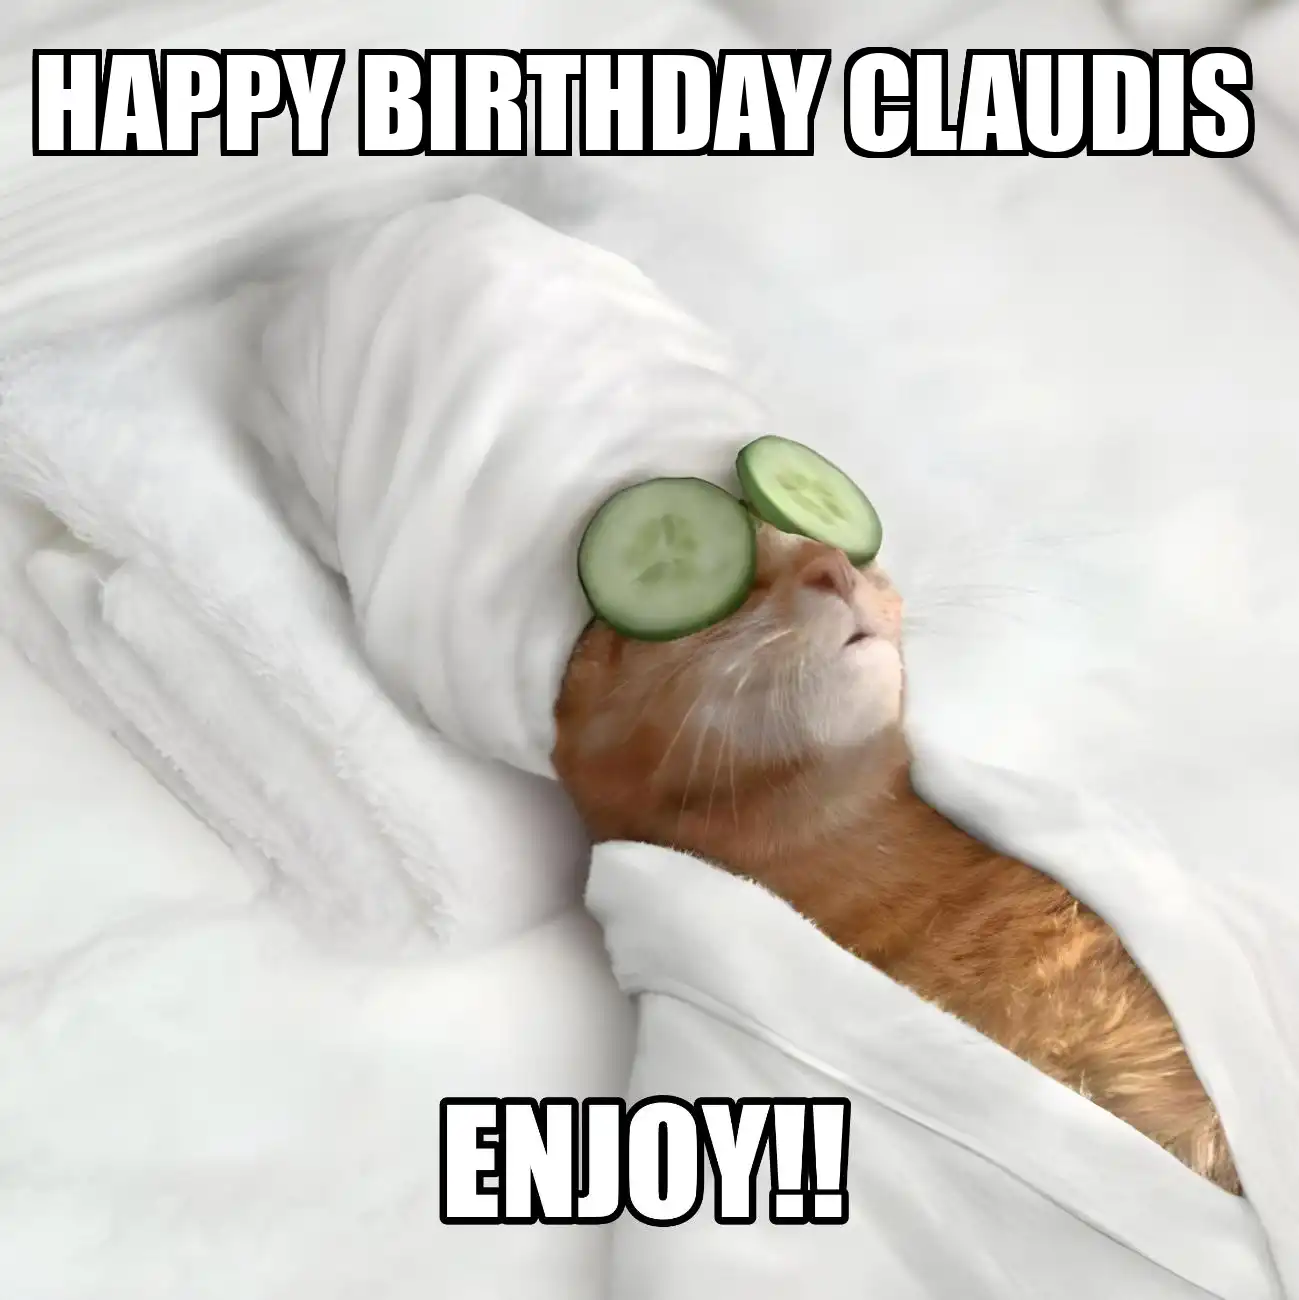 Happy Birthday Claudis Enjoy Cat Meme